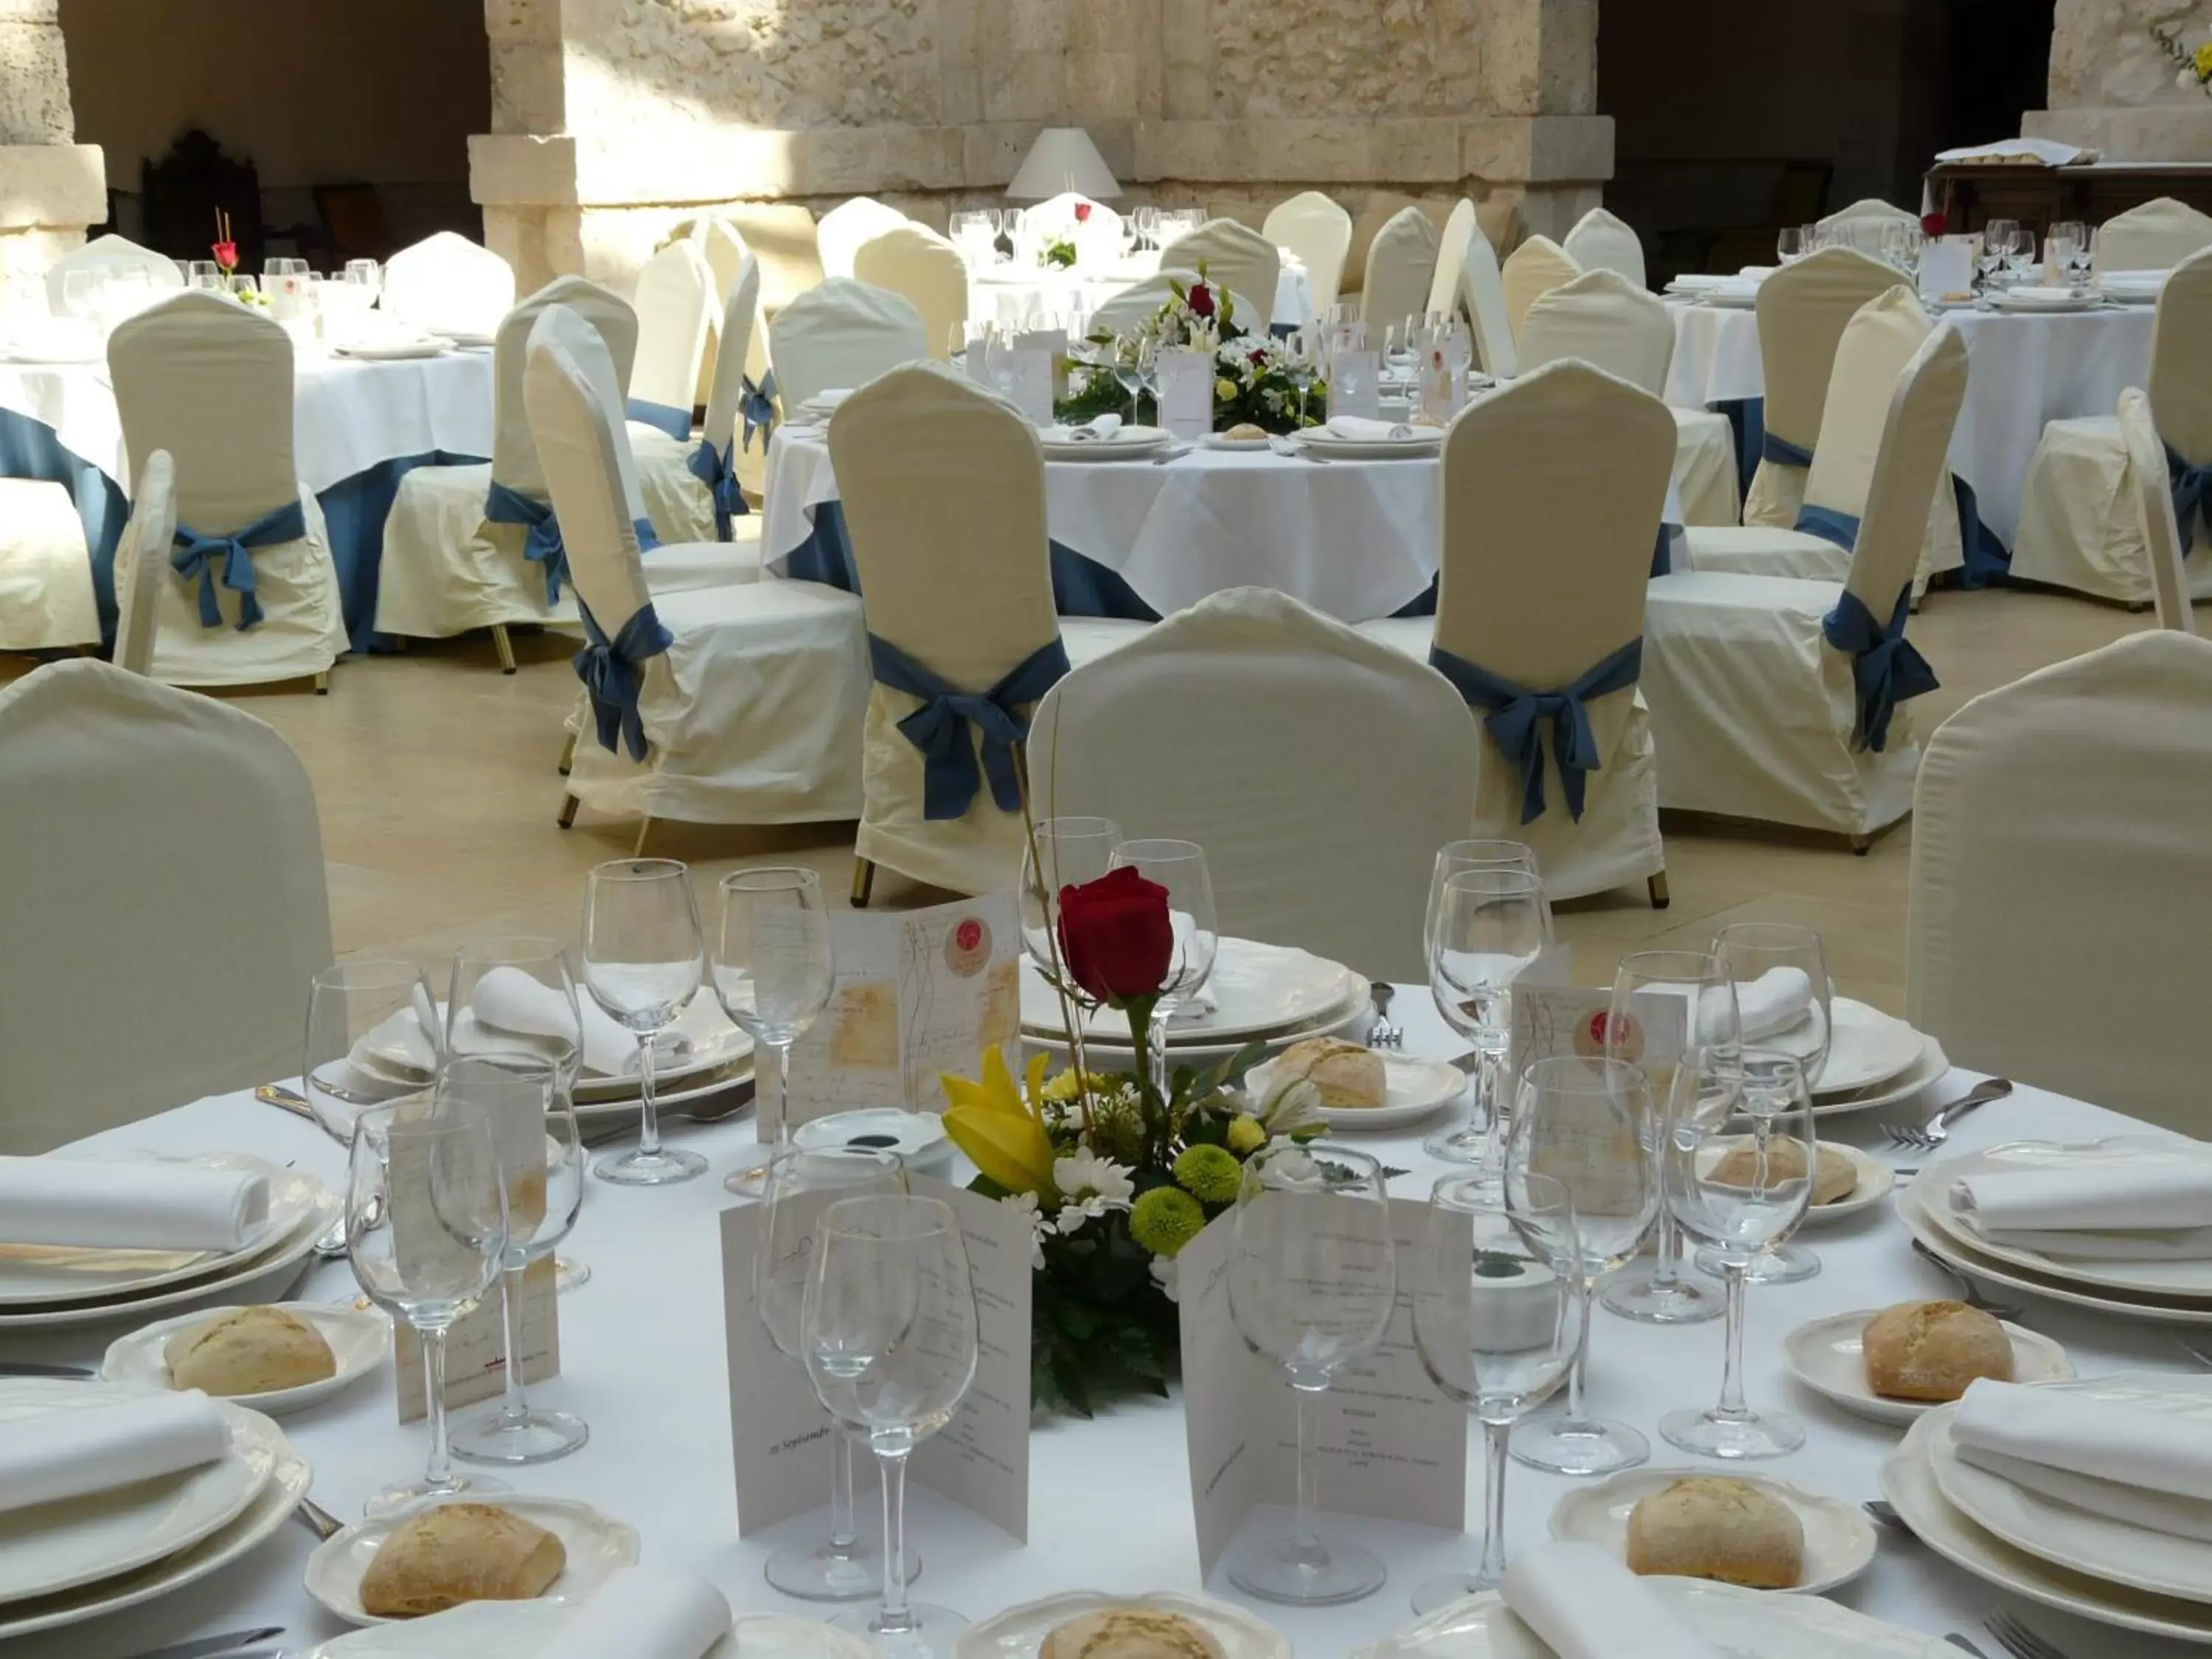 Banquet/Function facilities, Banquet Facilities in AZZ Peñafiel Las Claras Hotel & Spa